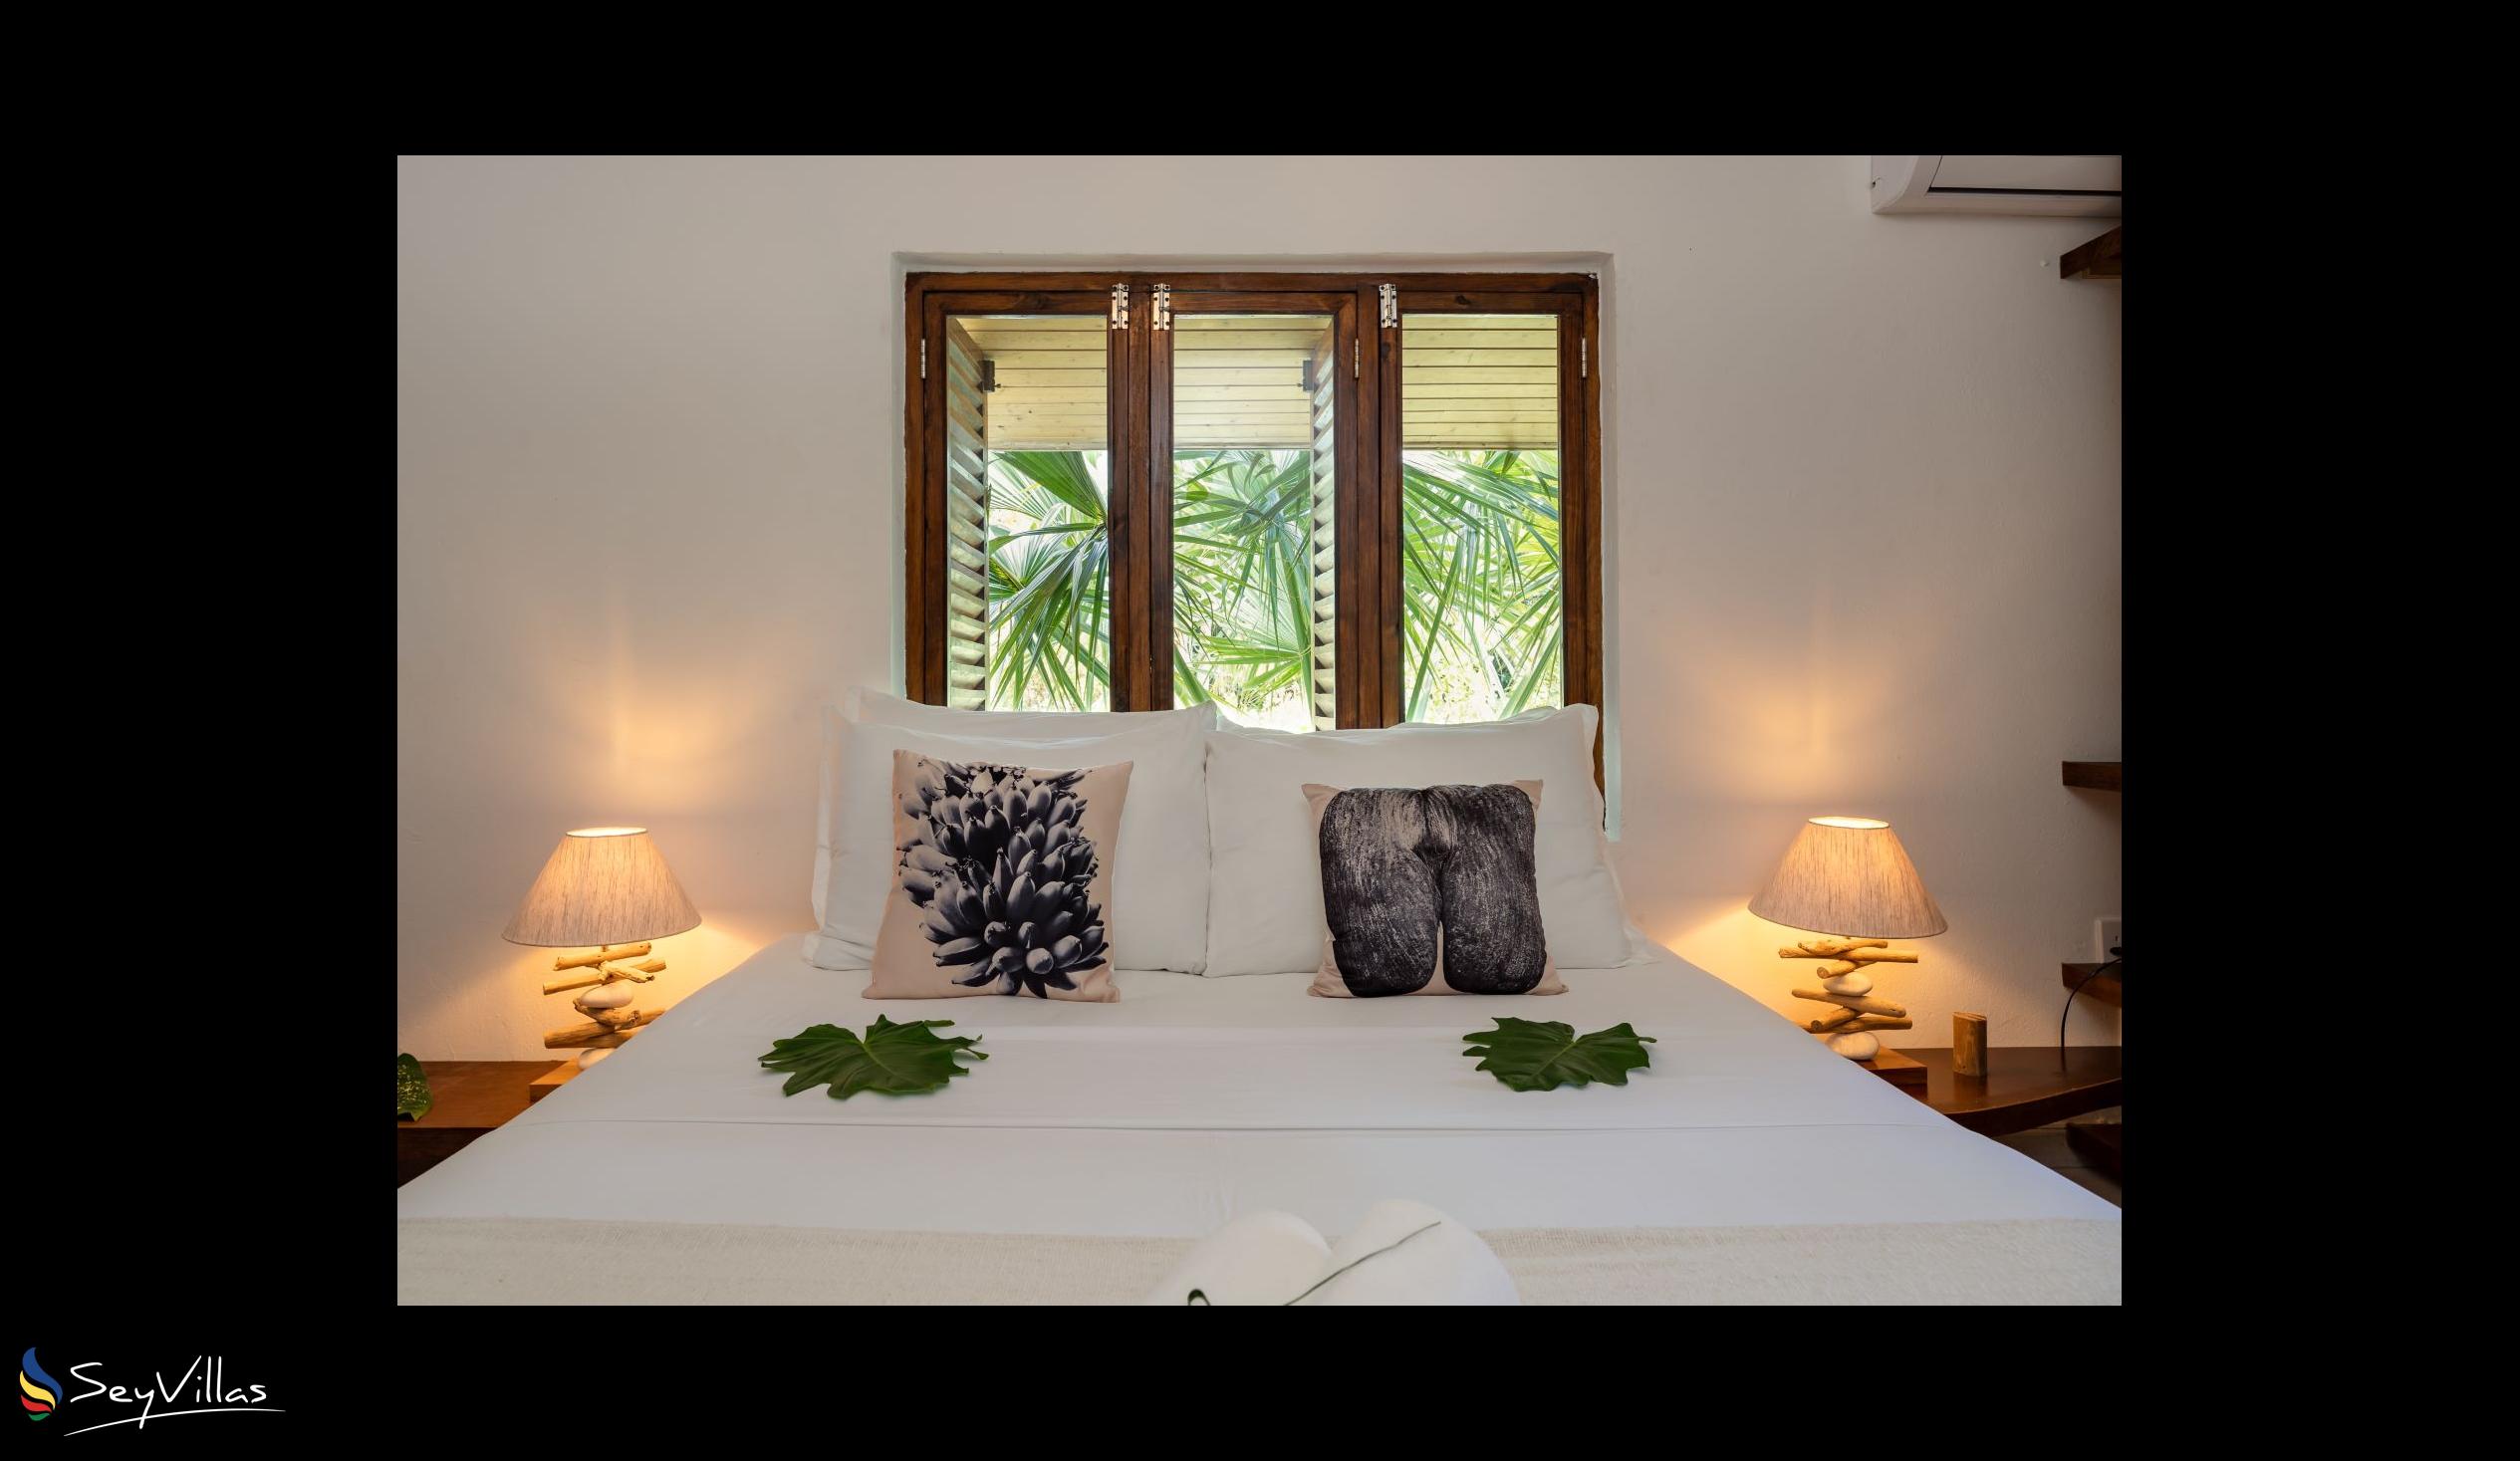 Photo 67: Bliss Hotel Praslin - Eden Garden - Charm Room - Praslin (Seychelles)